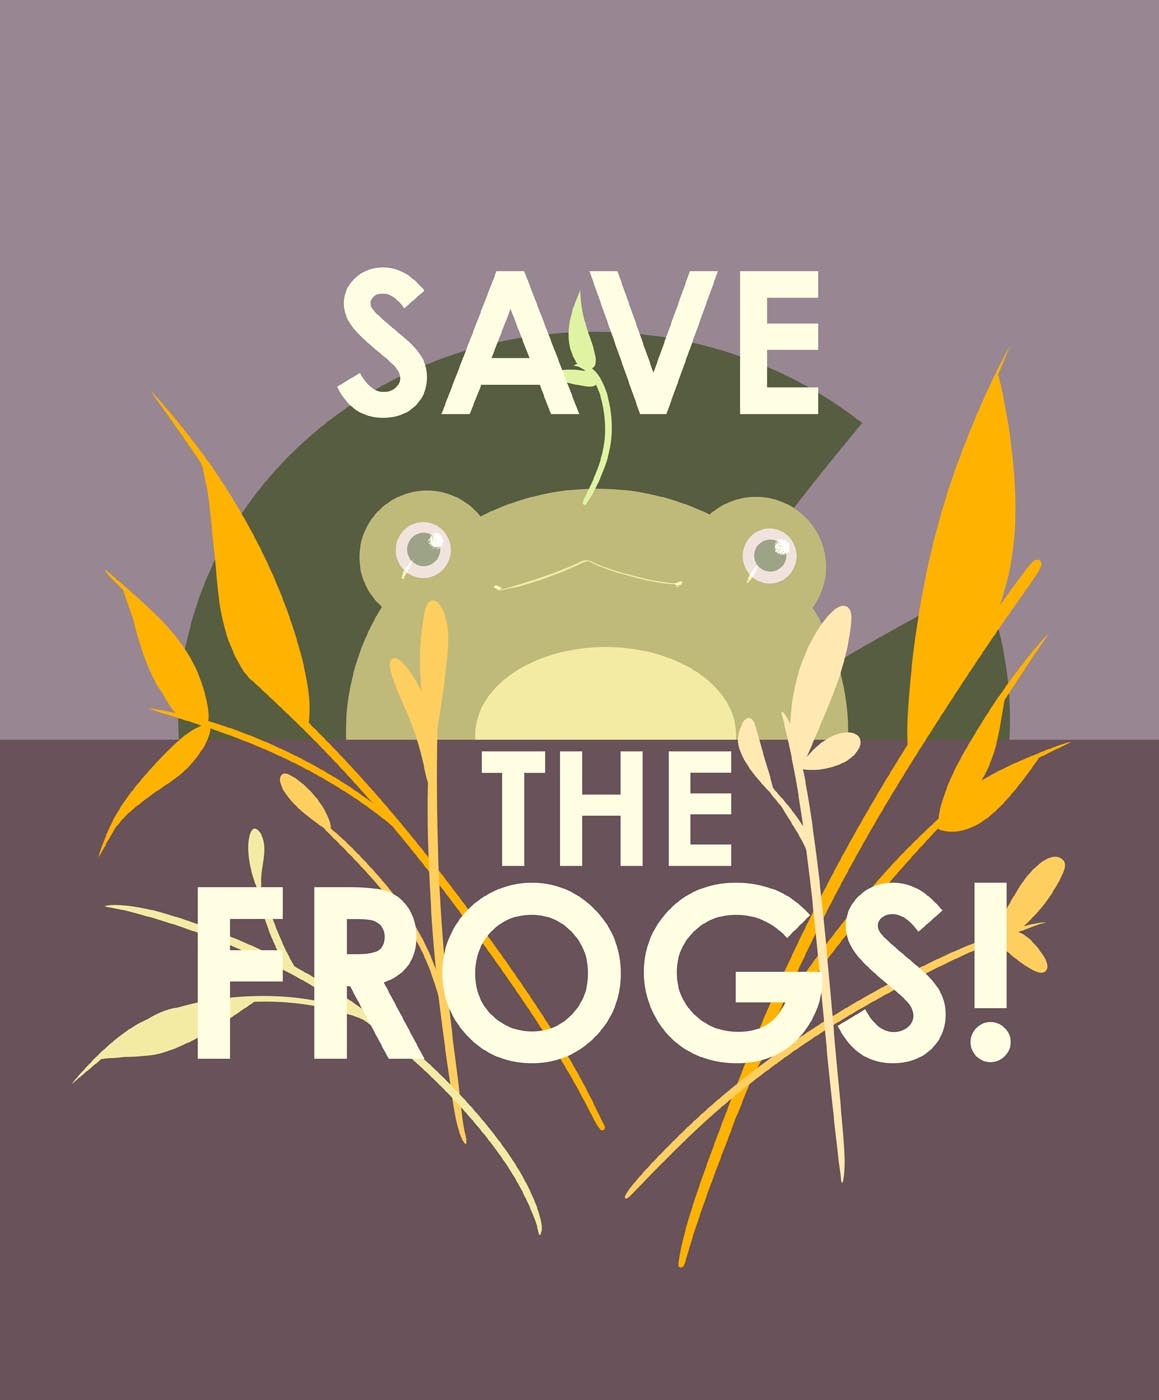 Яна-Ошовская-Россия-2021-save-the-frogs-art-contest-1